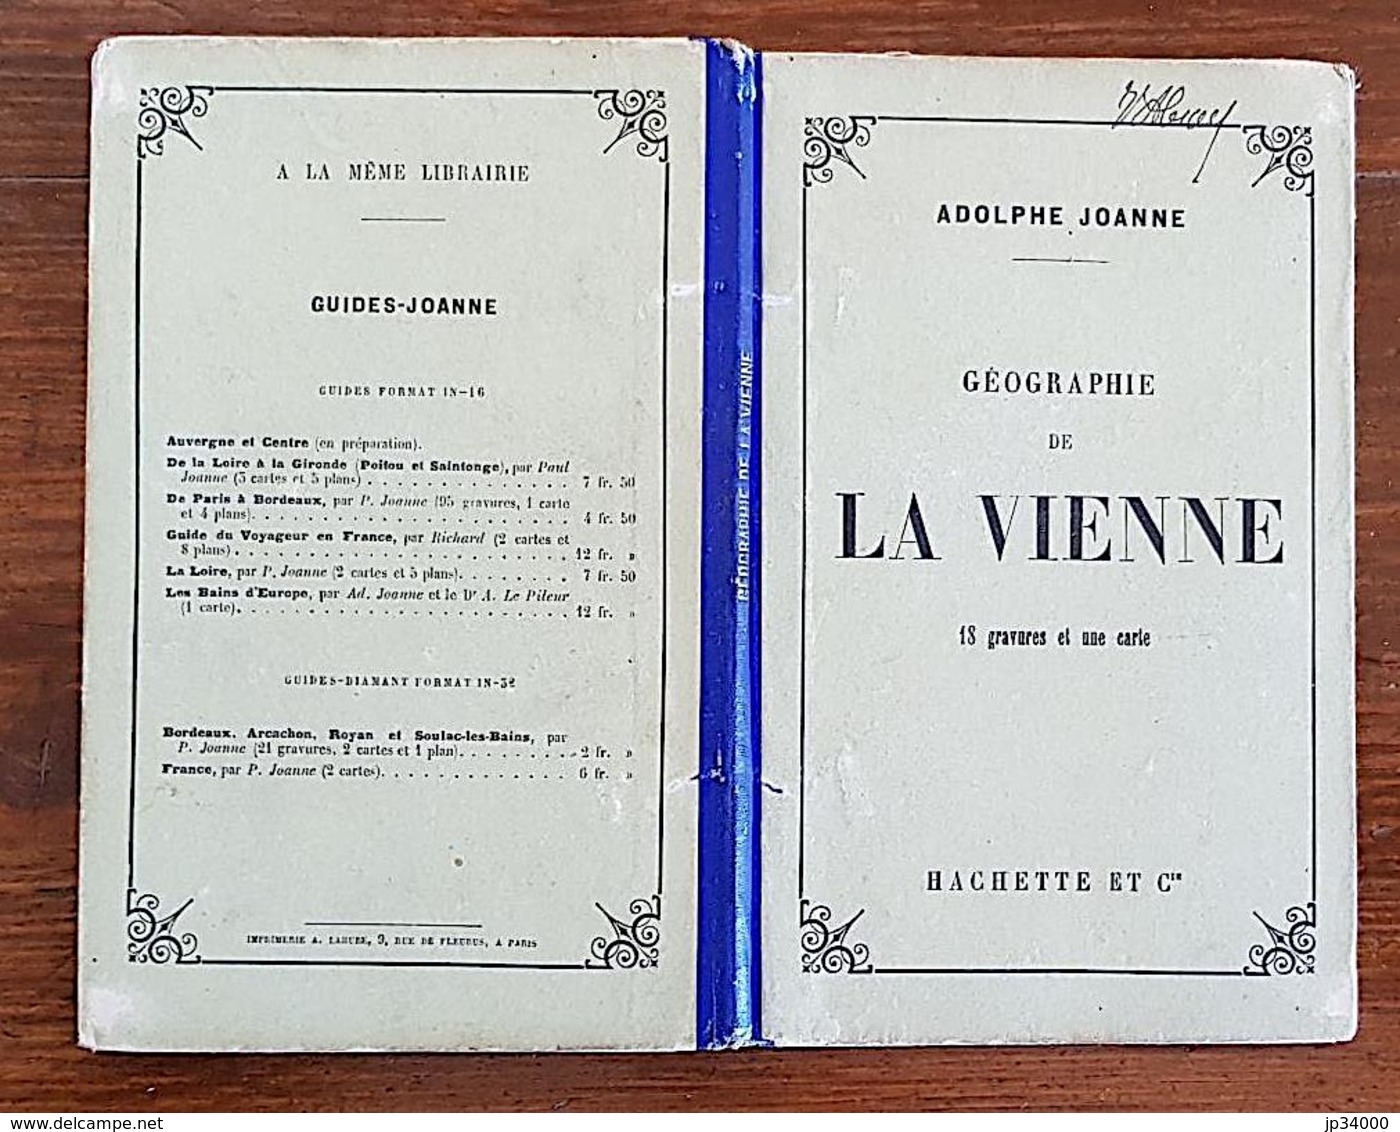 Géographie DE LA VIENNE 18 Gravures + 1 Carte 1880 Adolphe Joanne. - Poitou-Charentes